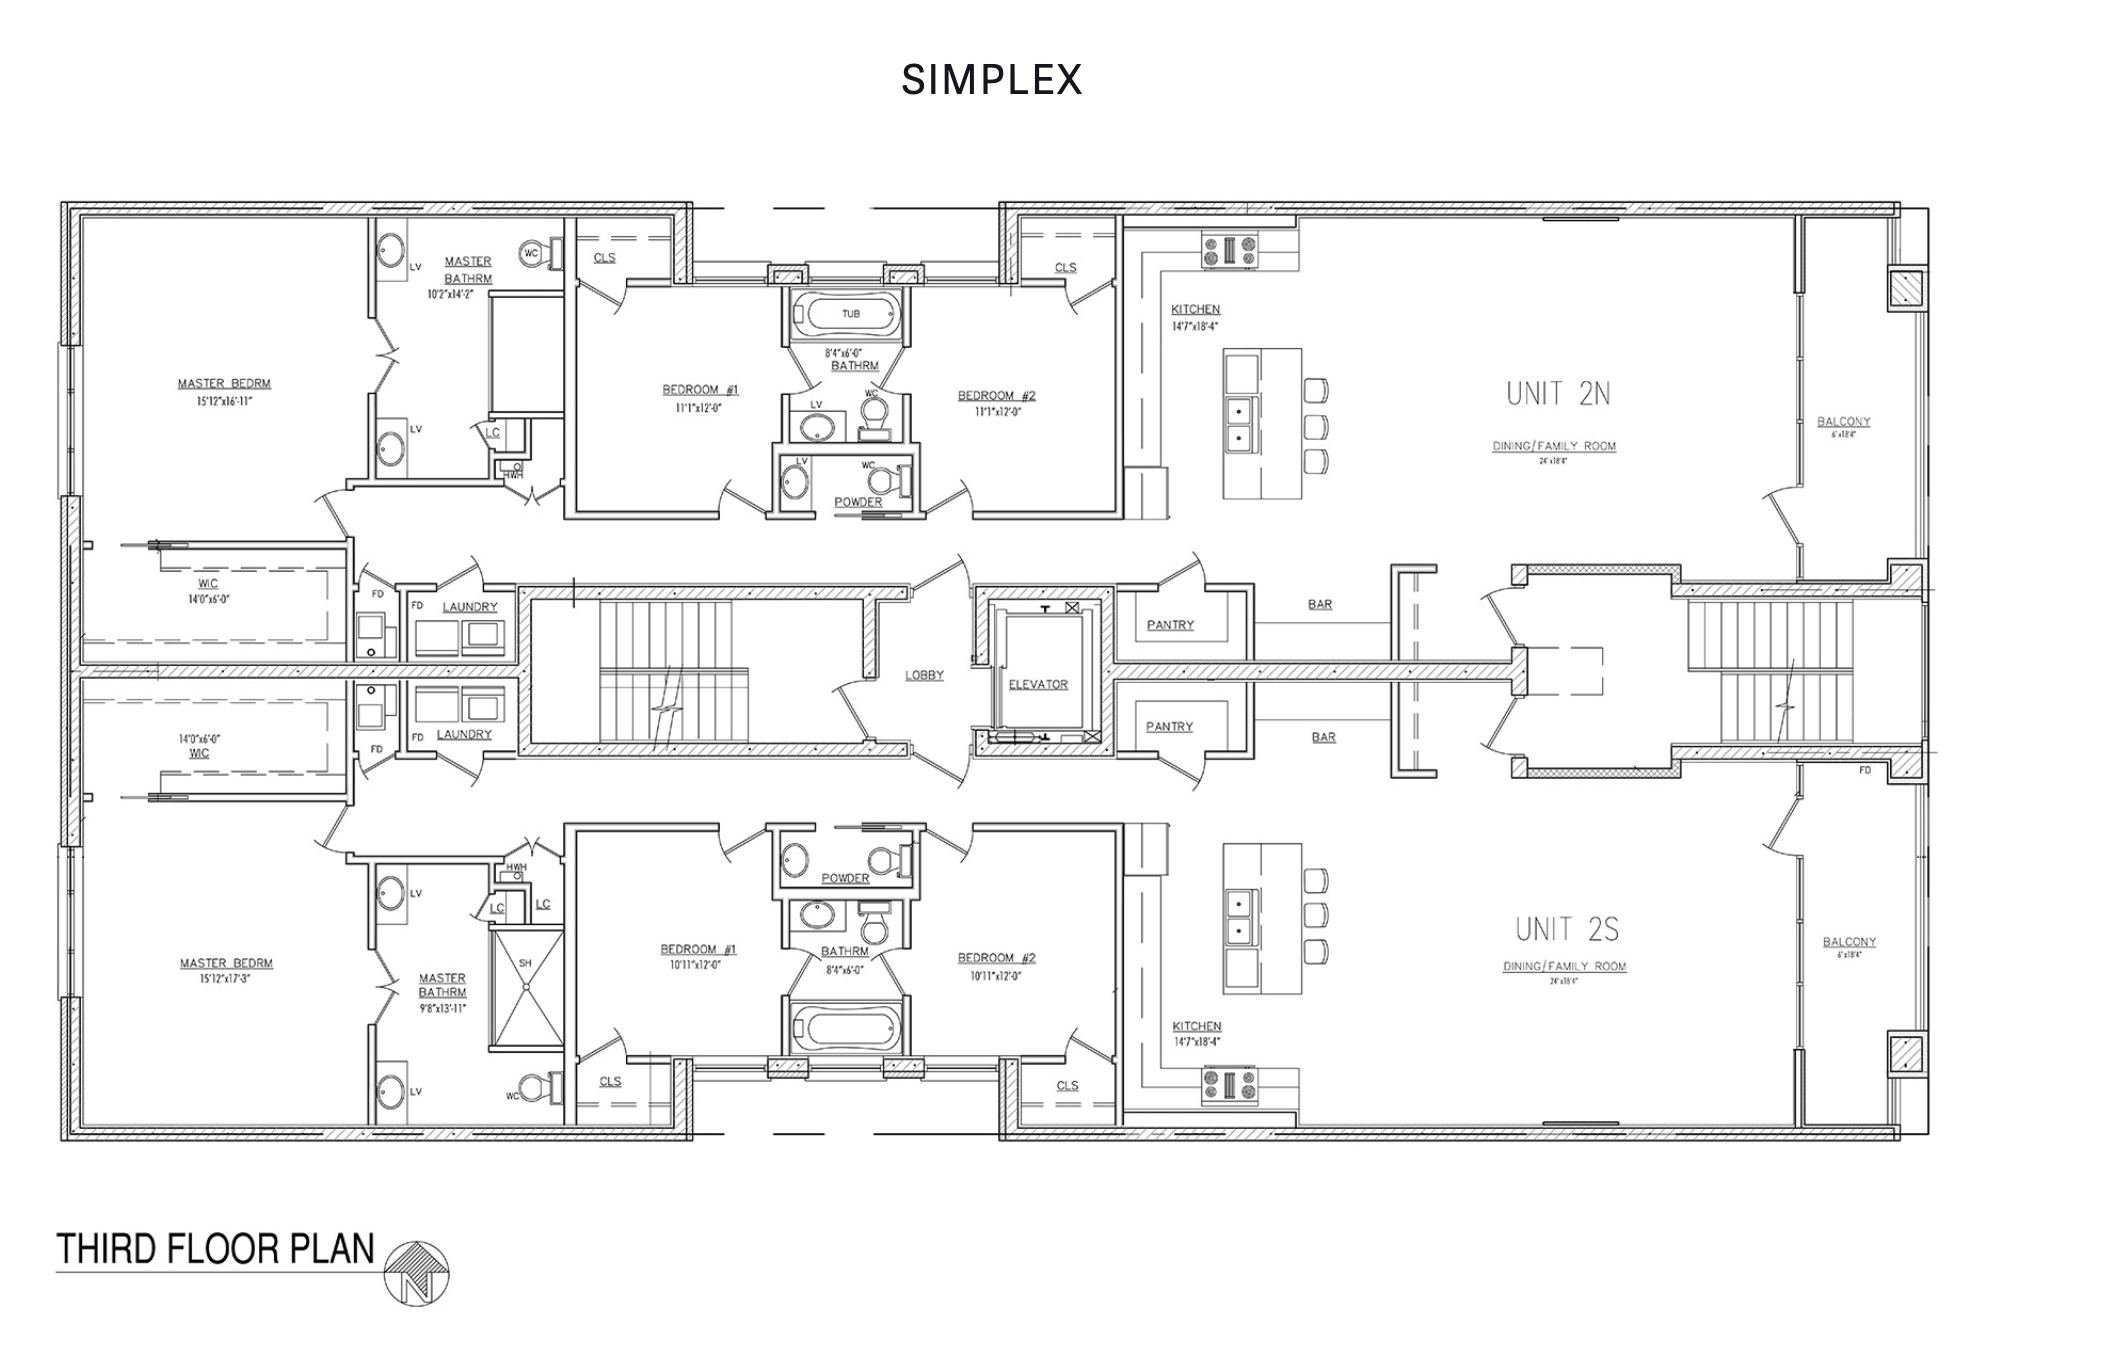 West Loop Collection simplex floor plan